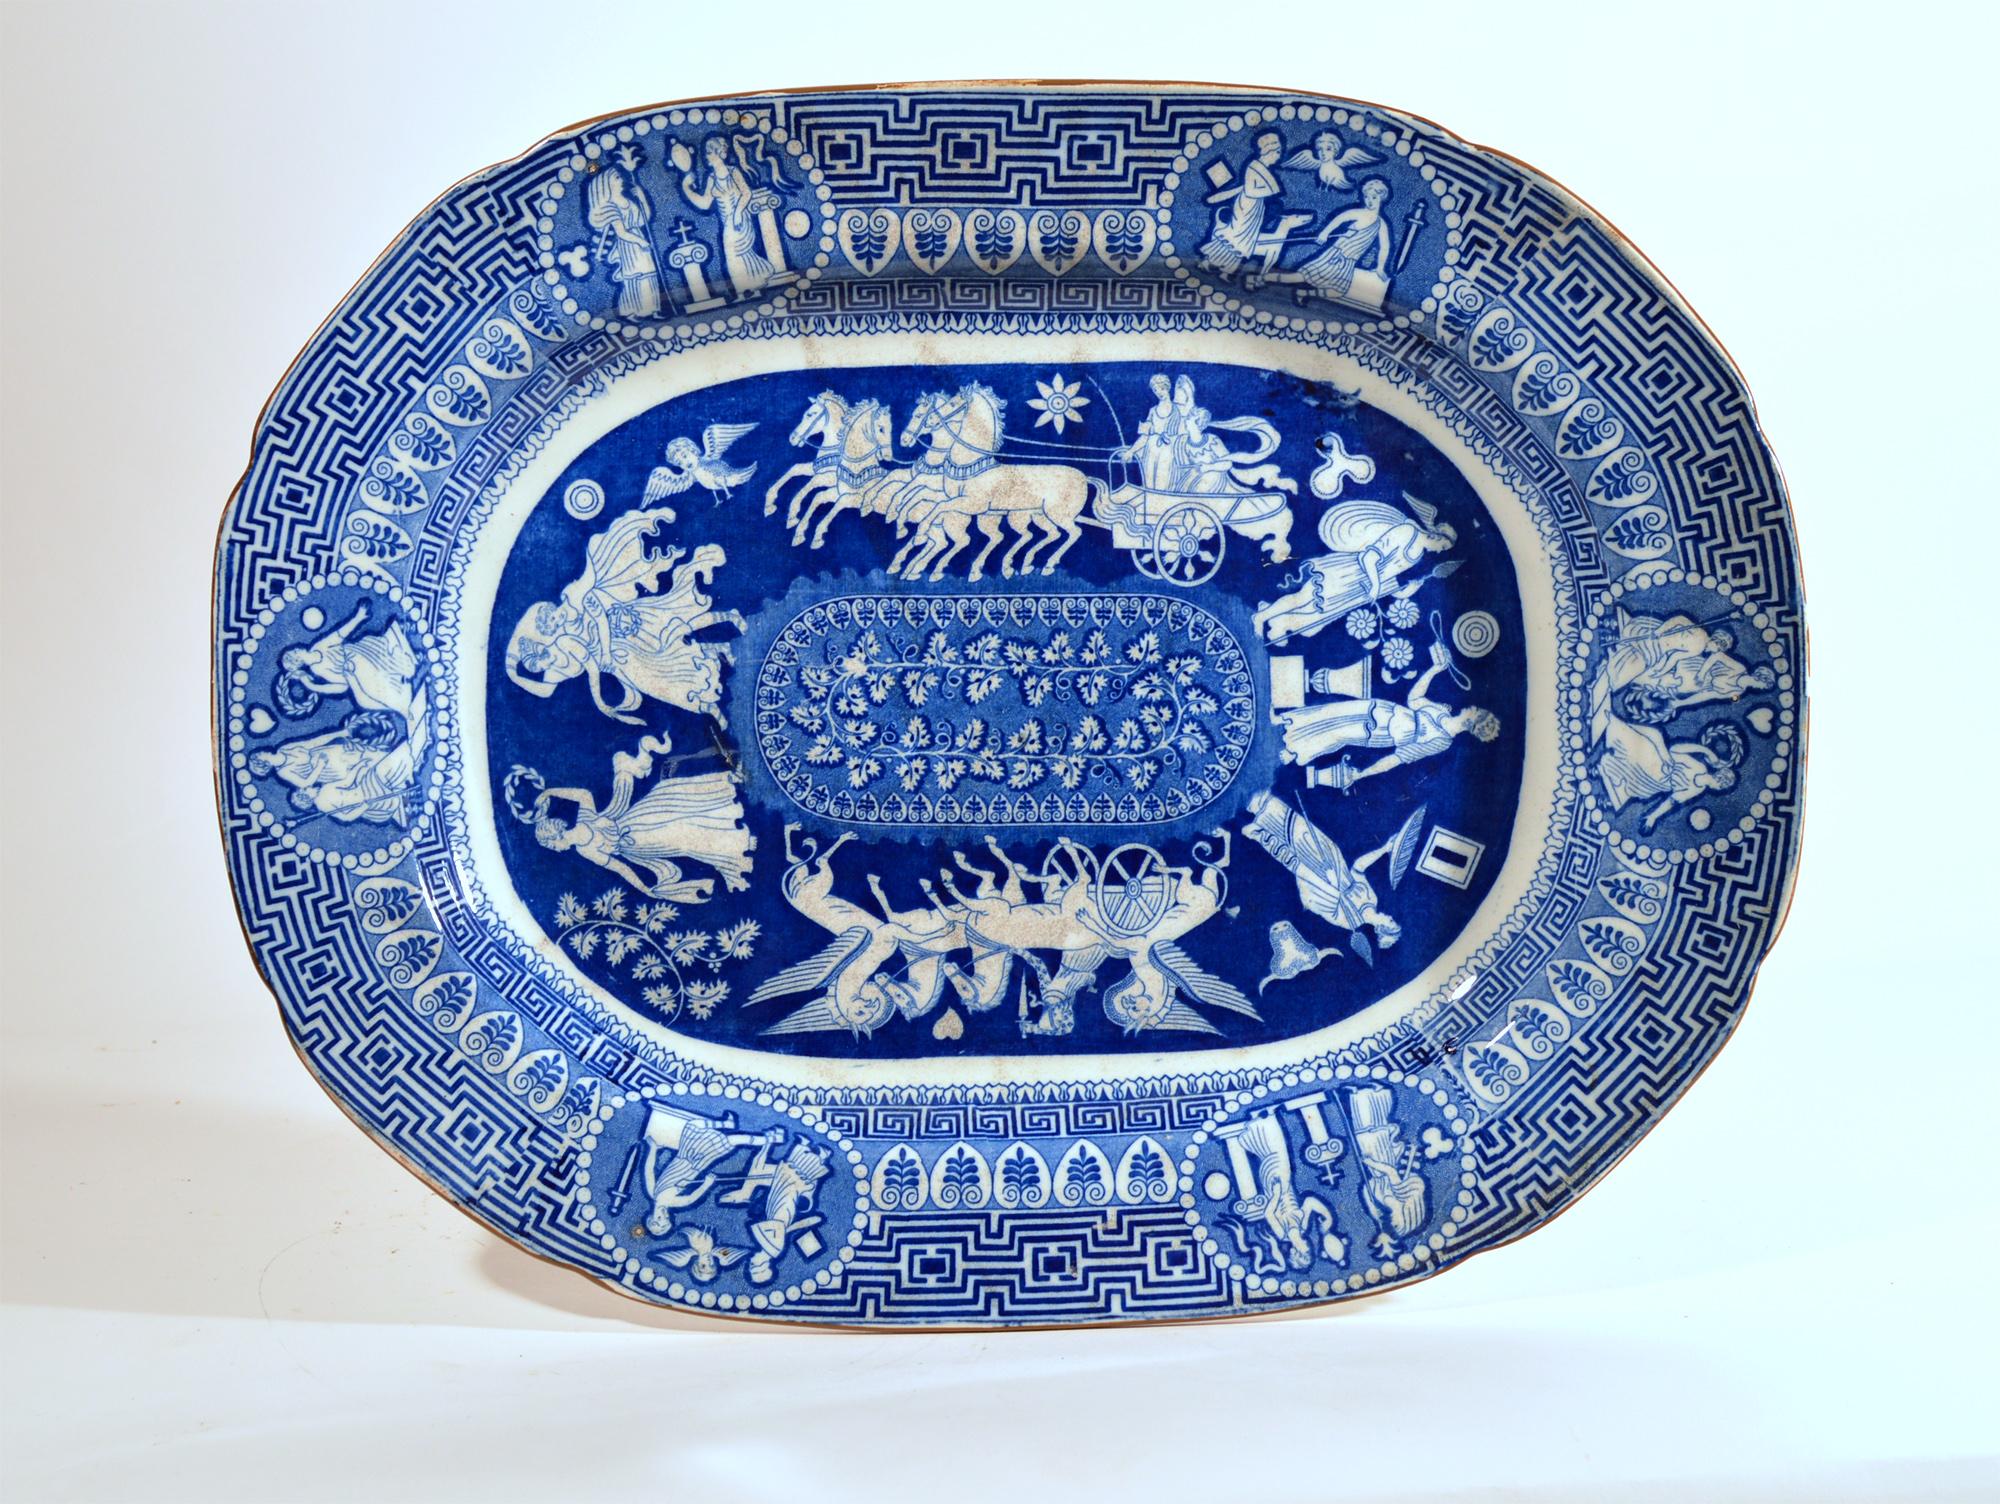 Grand plat néo-classique à motif grec imprimé en bleu,
Herculanum, Liverpool,
Début du 19e siècle

Le motif central en bleu sous-glacé de la poterie d'Herculanum montre une série d'images encerclant un panneau ovale avec une vigne feuillue. Il y